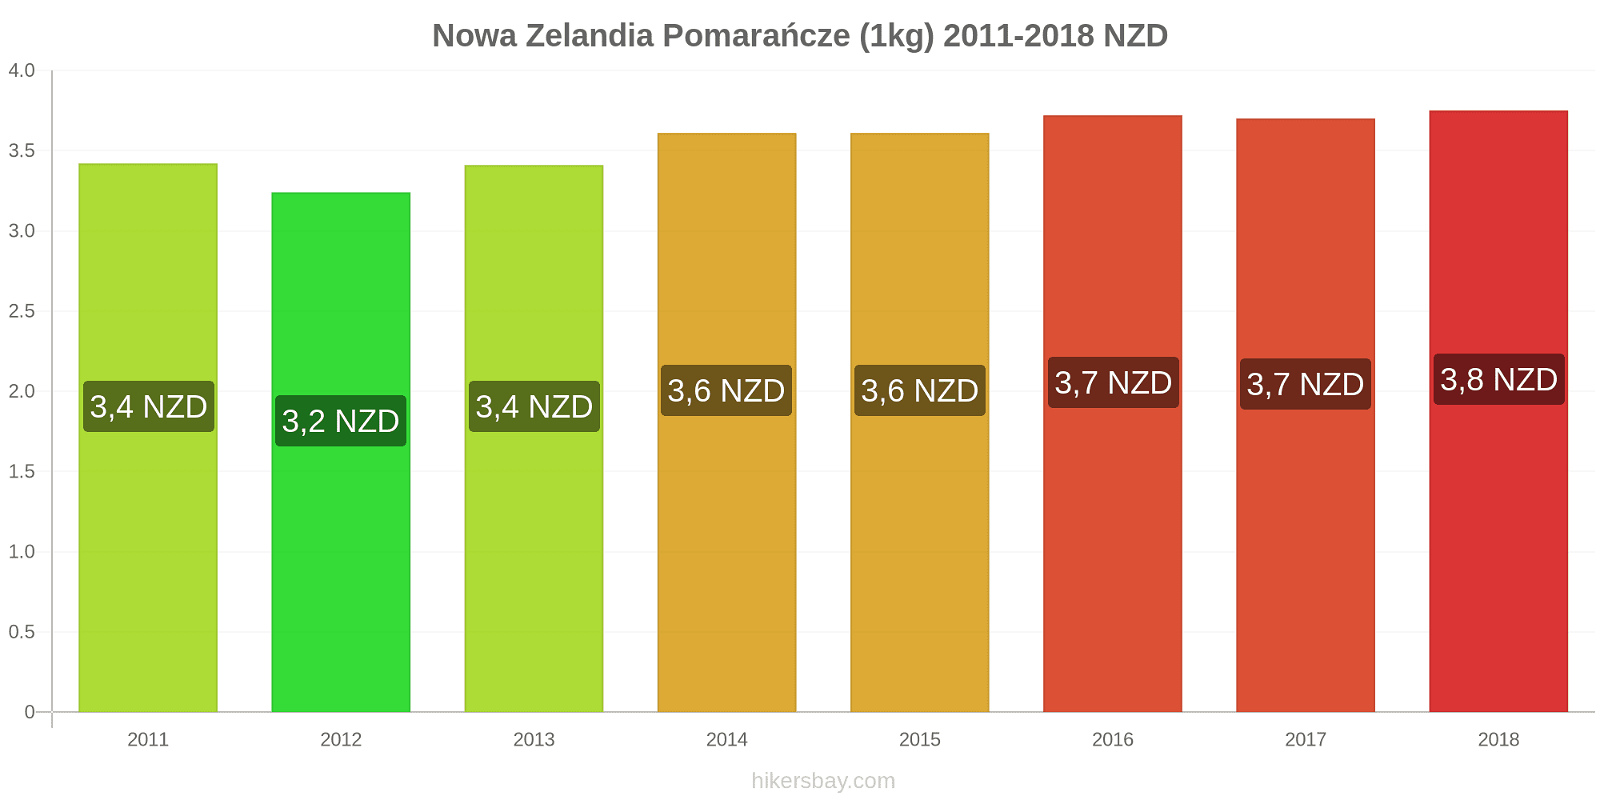 Nowa Zelandia zmiany cen Pomarańcze (1kg) hikersbay.com